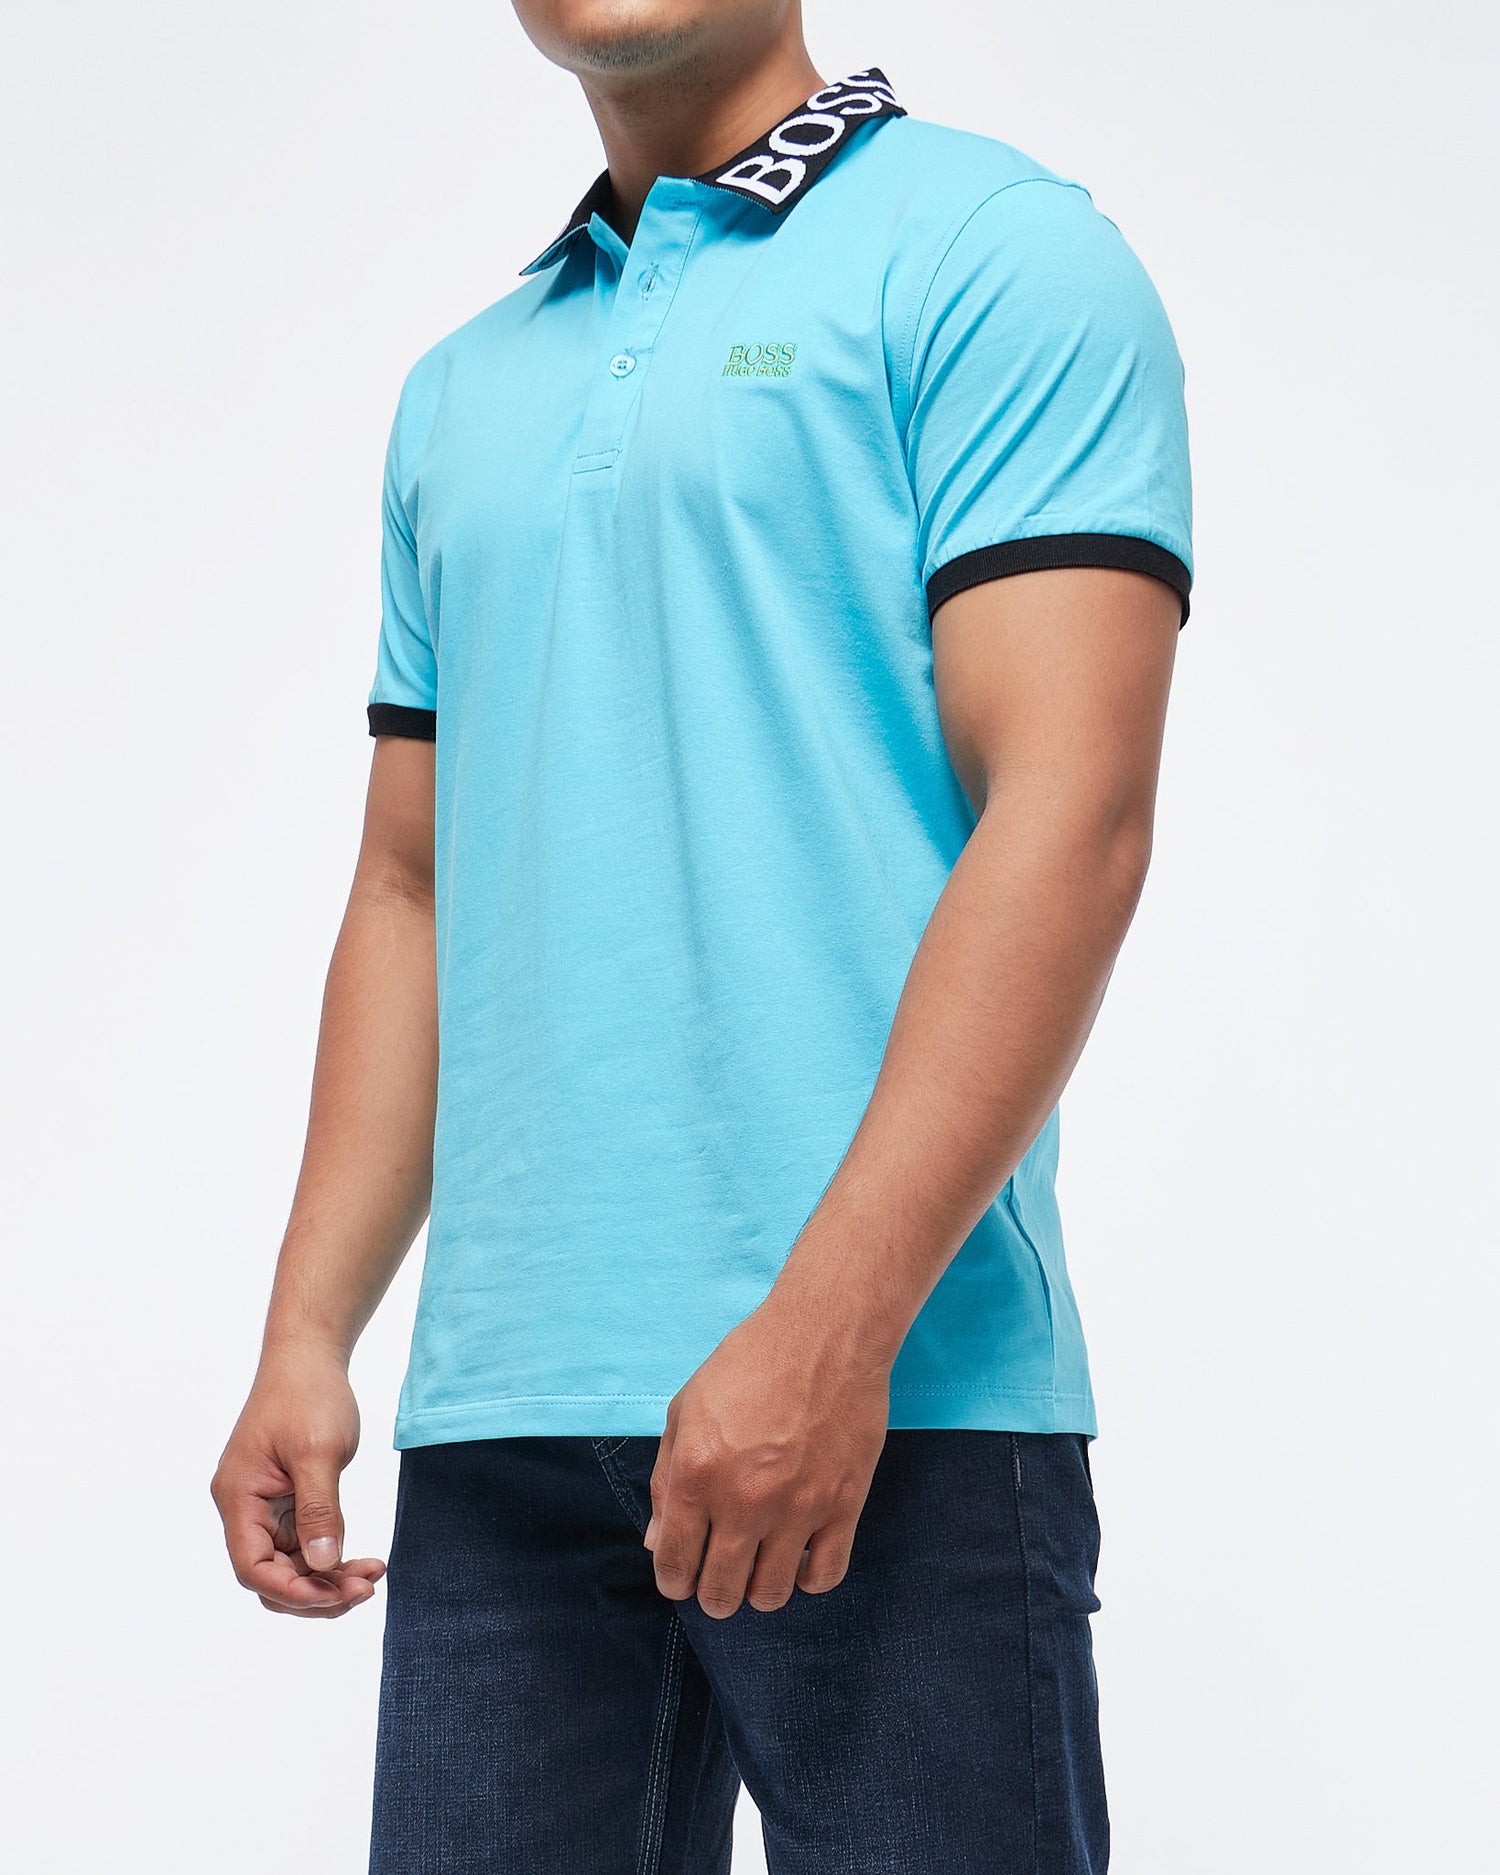 MOI OUTFIT-Collar Logo Printed Men Polo Shirt 13.90